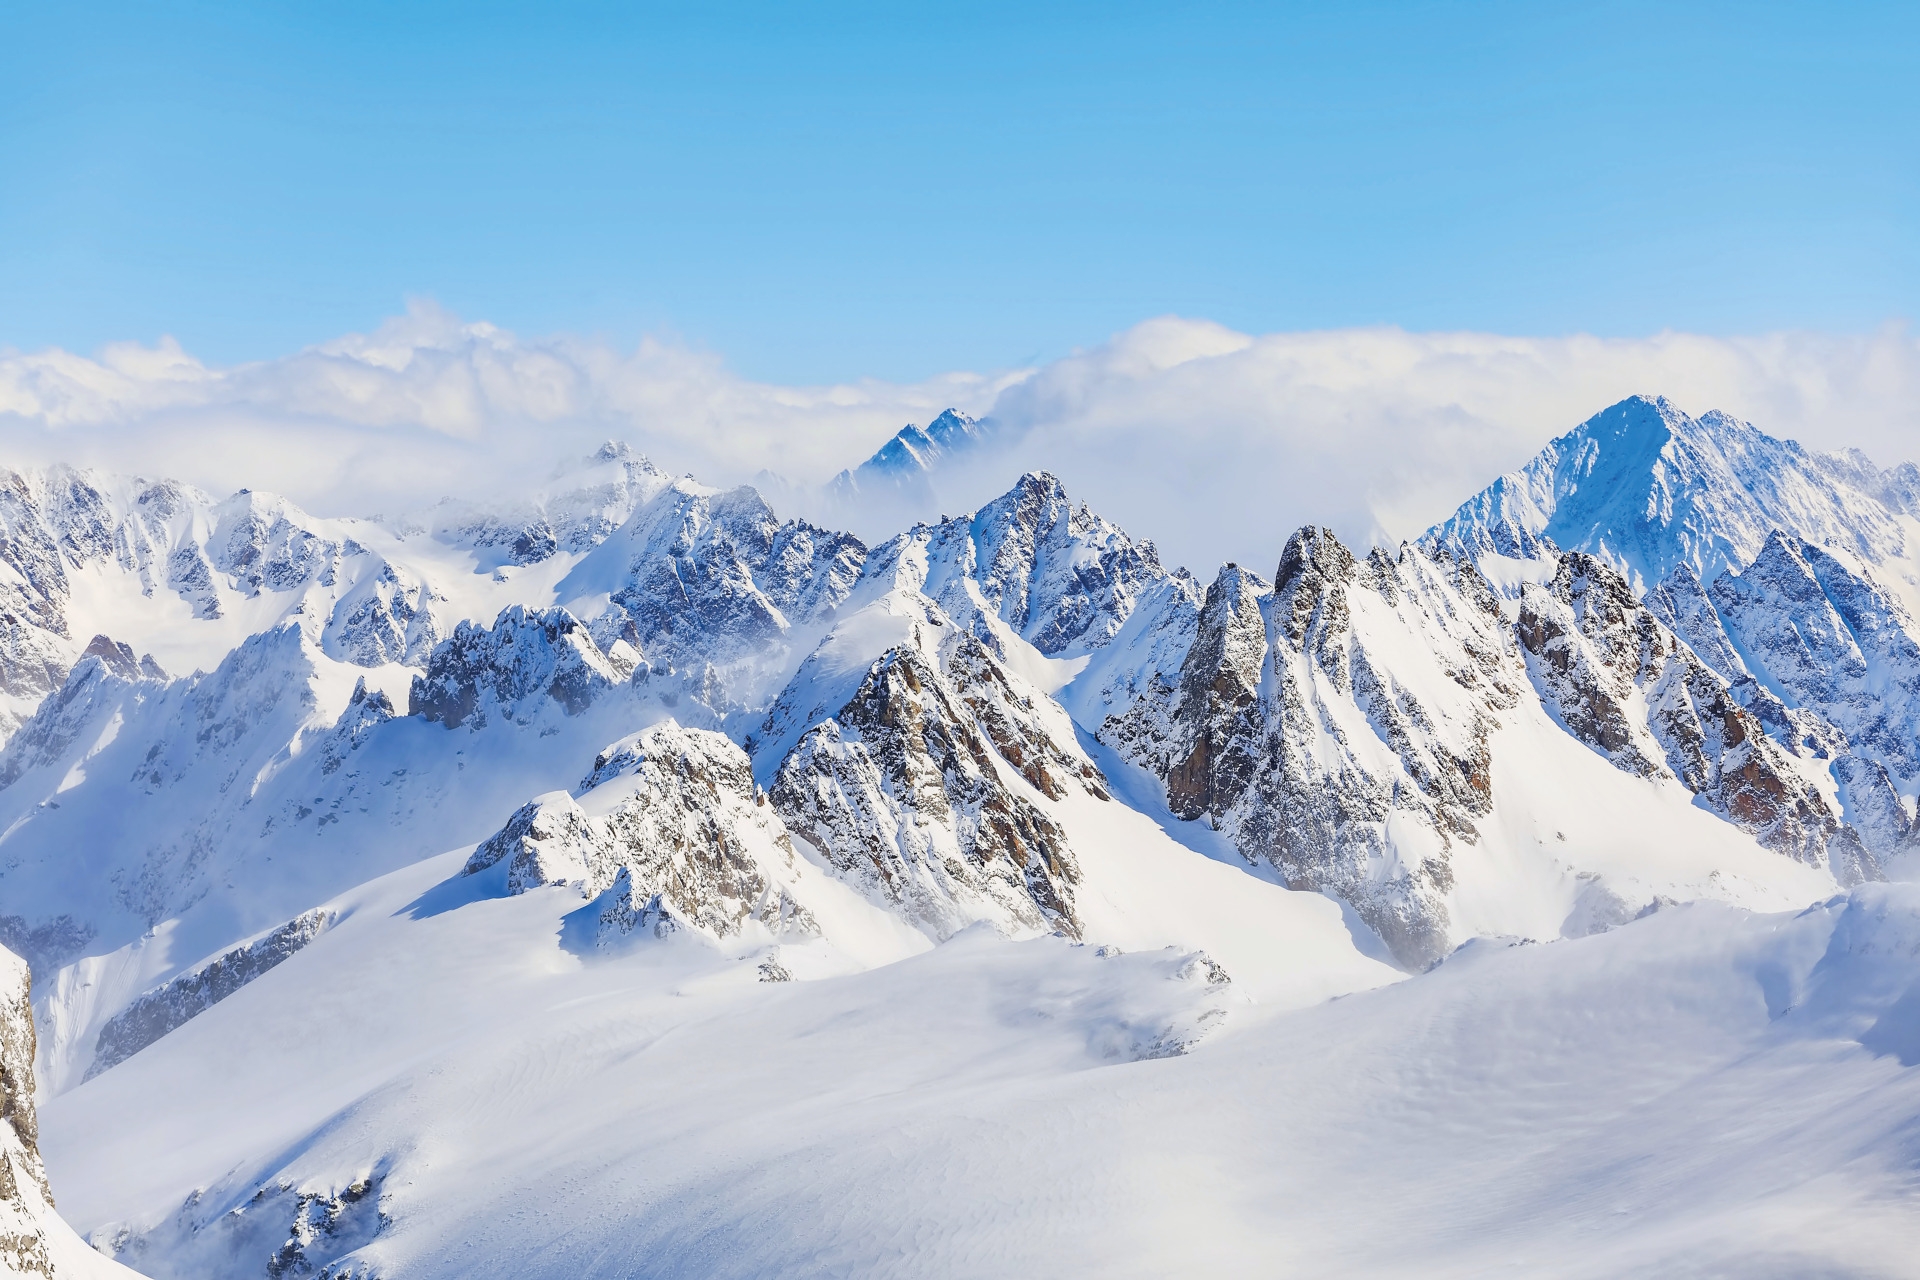 Cortina slopes